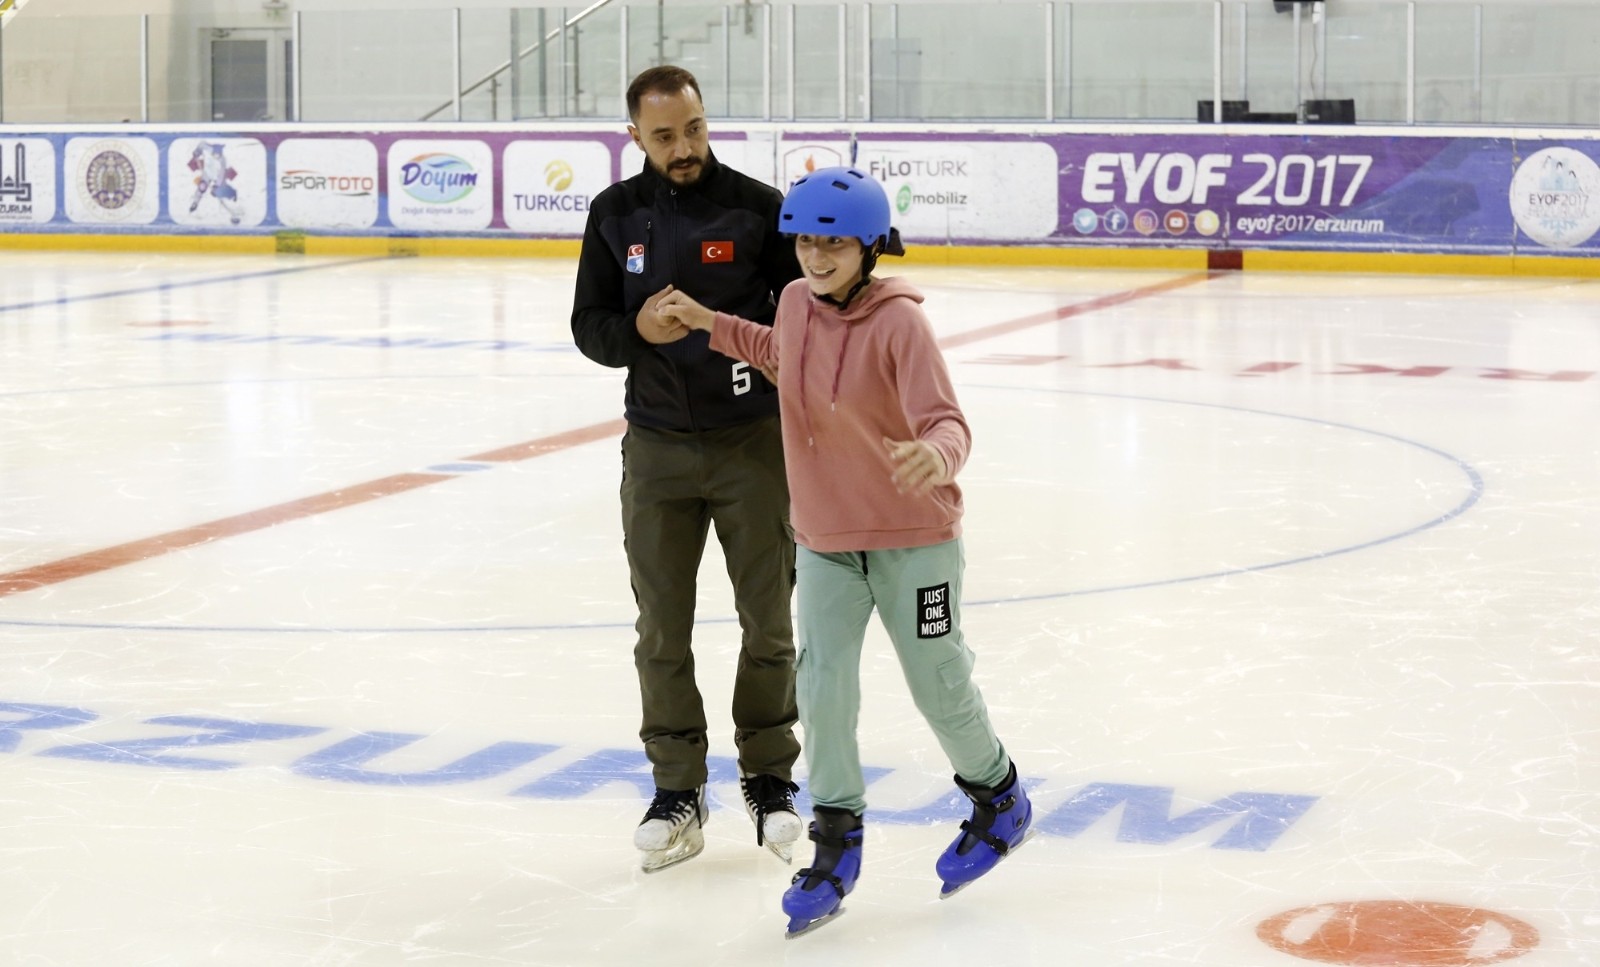 Büyükşehir engelli çocuklar için buz pateni kursu açtı